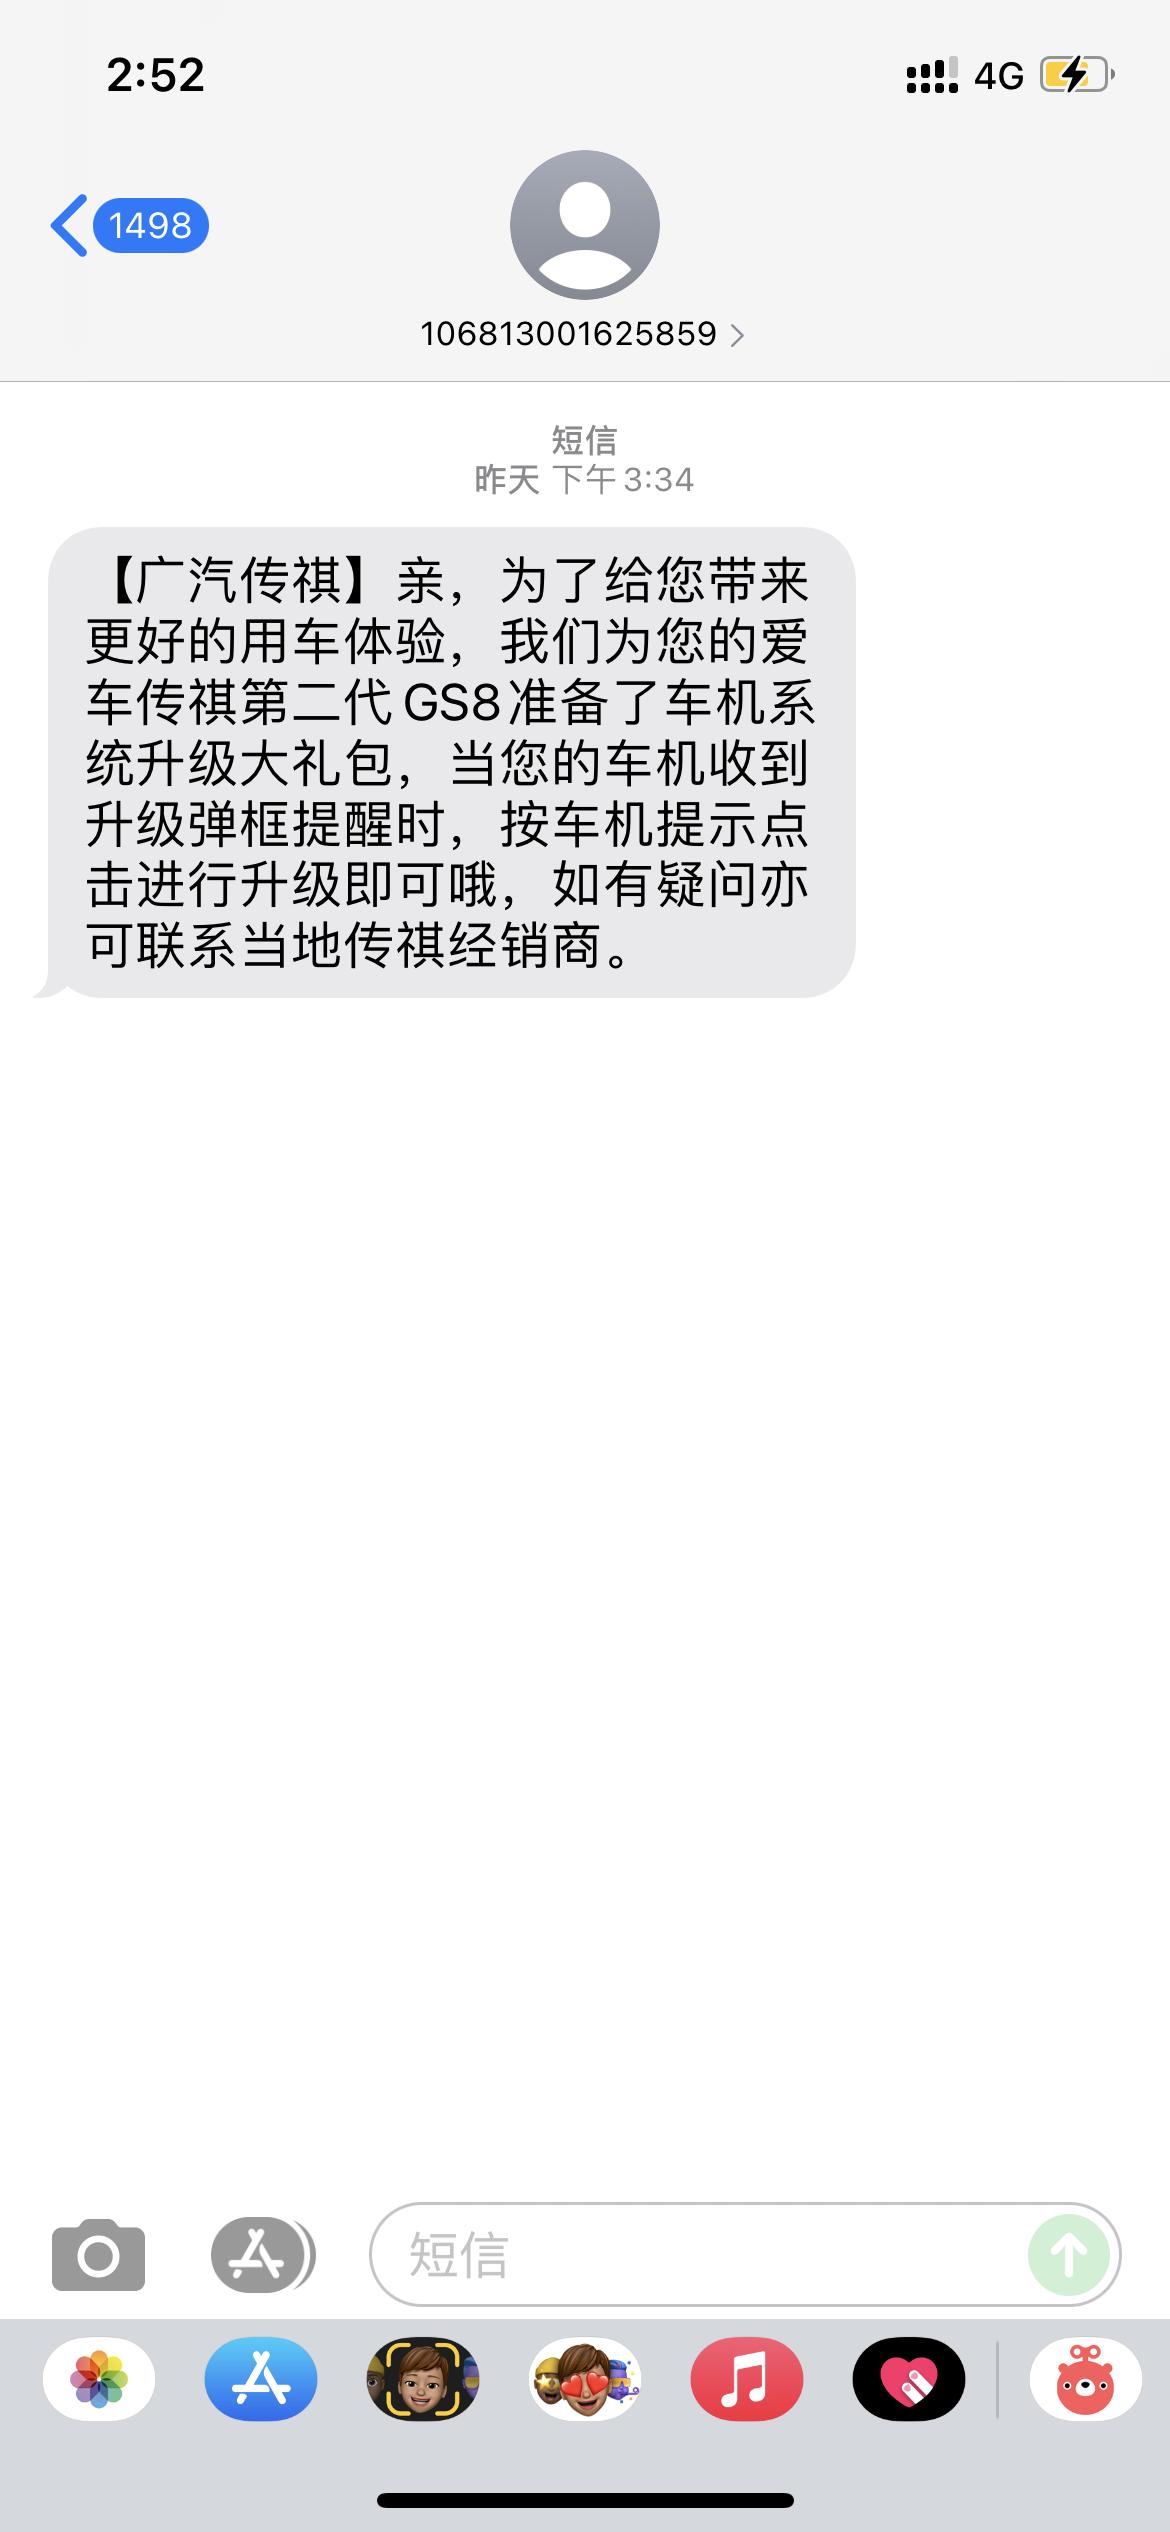 广汽传祺传祺GS8 ，的手机收到了系统升级的提醒短信，但一天过去了，目前车机还没有出现弹框提醒⏰